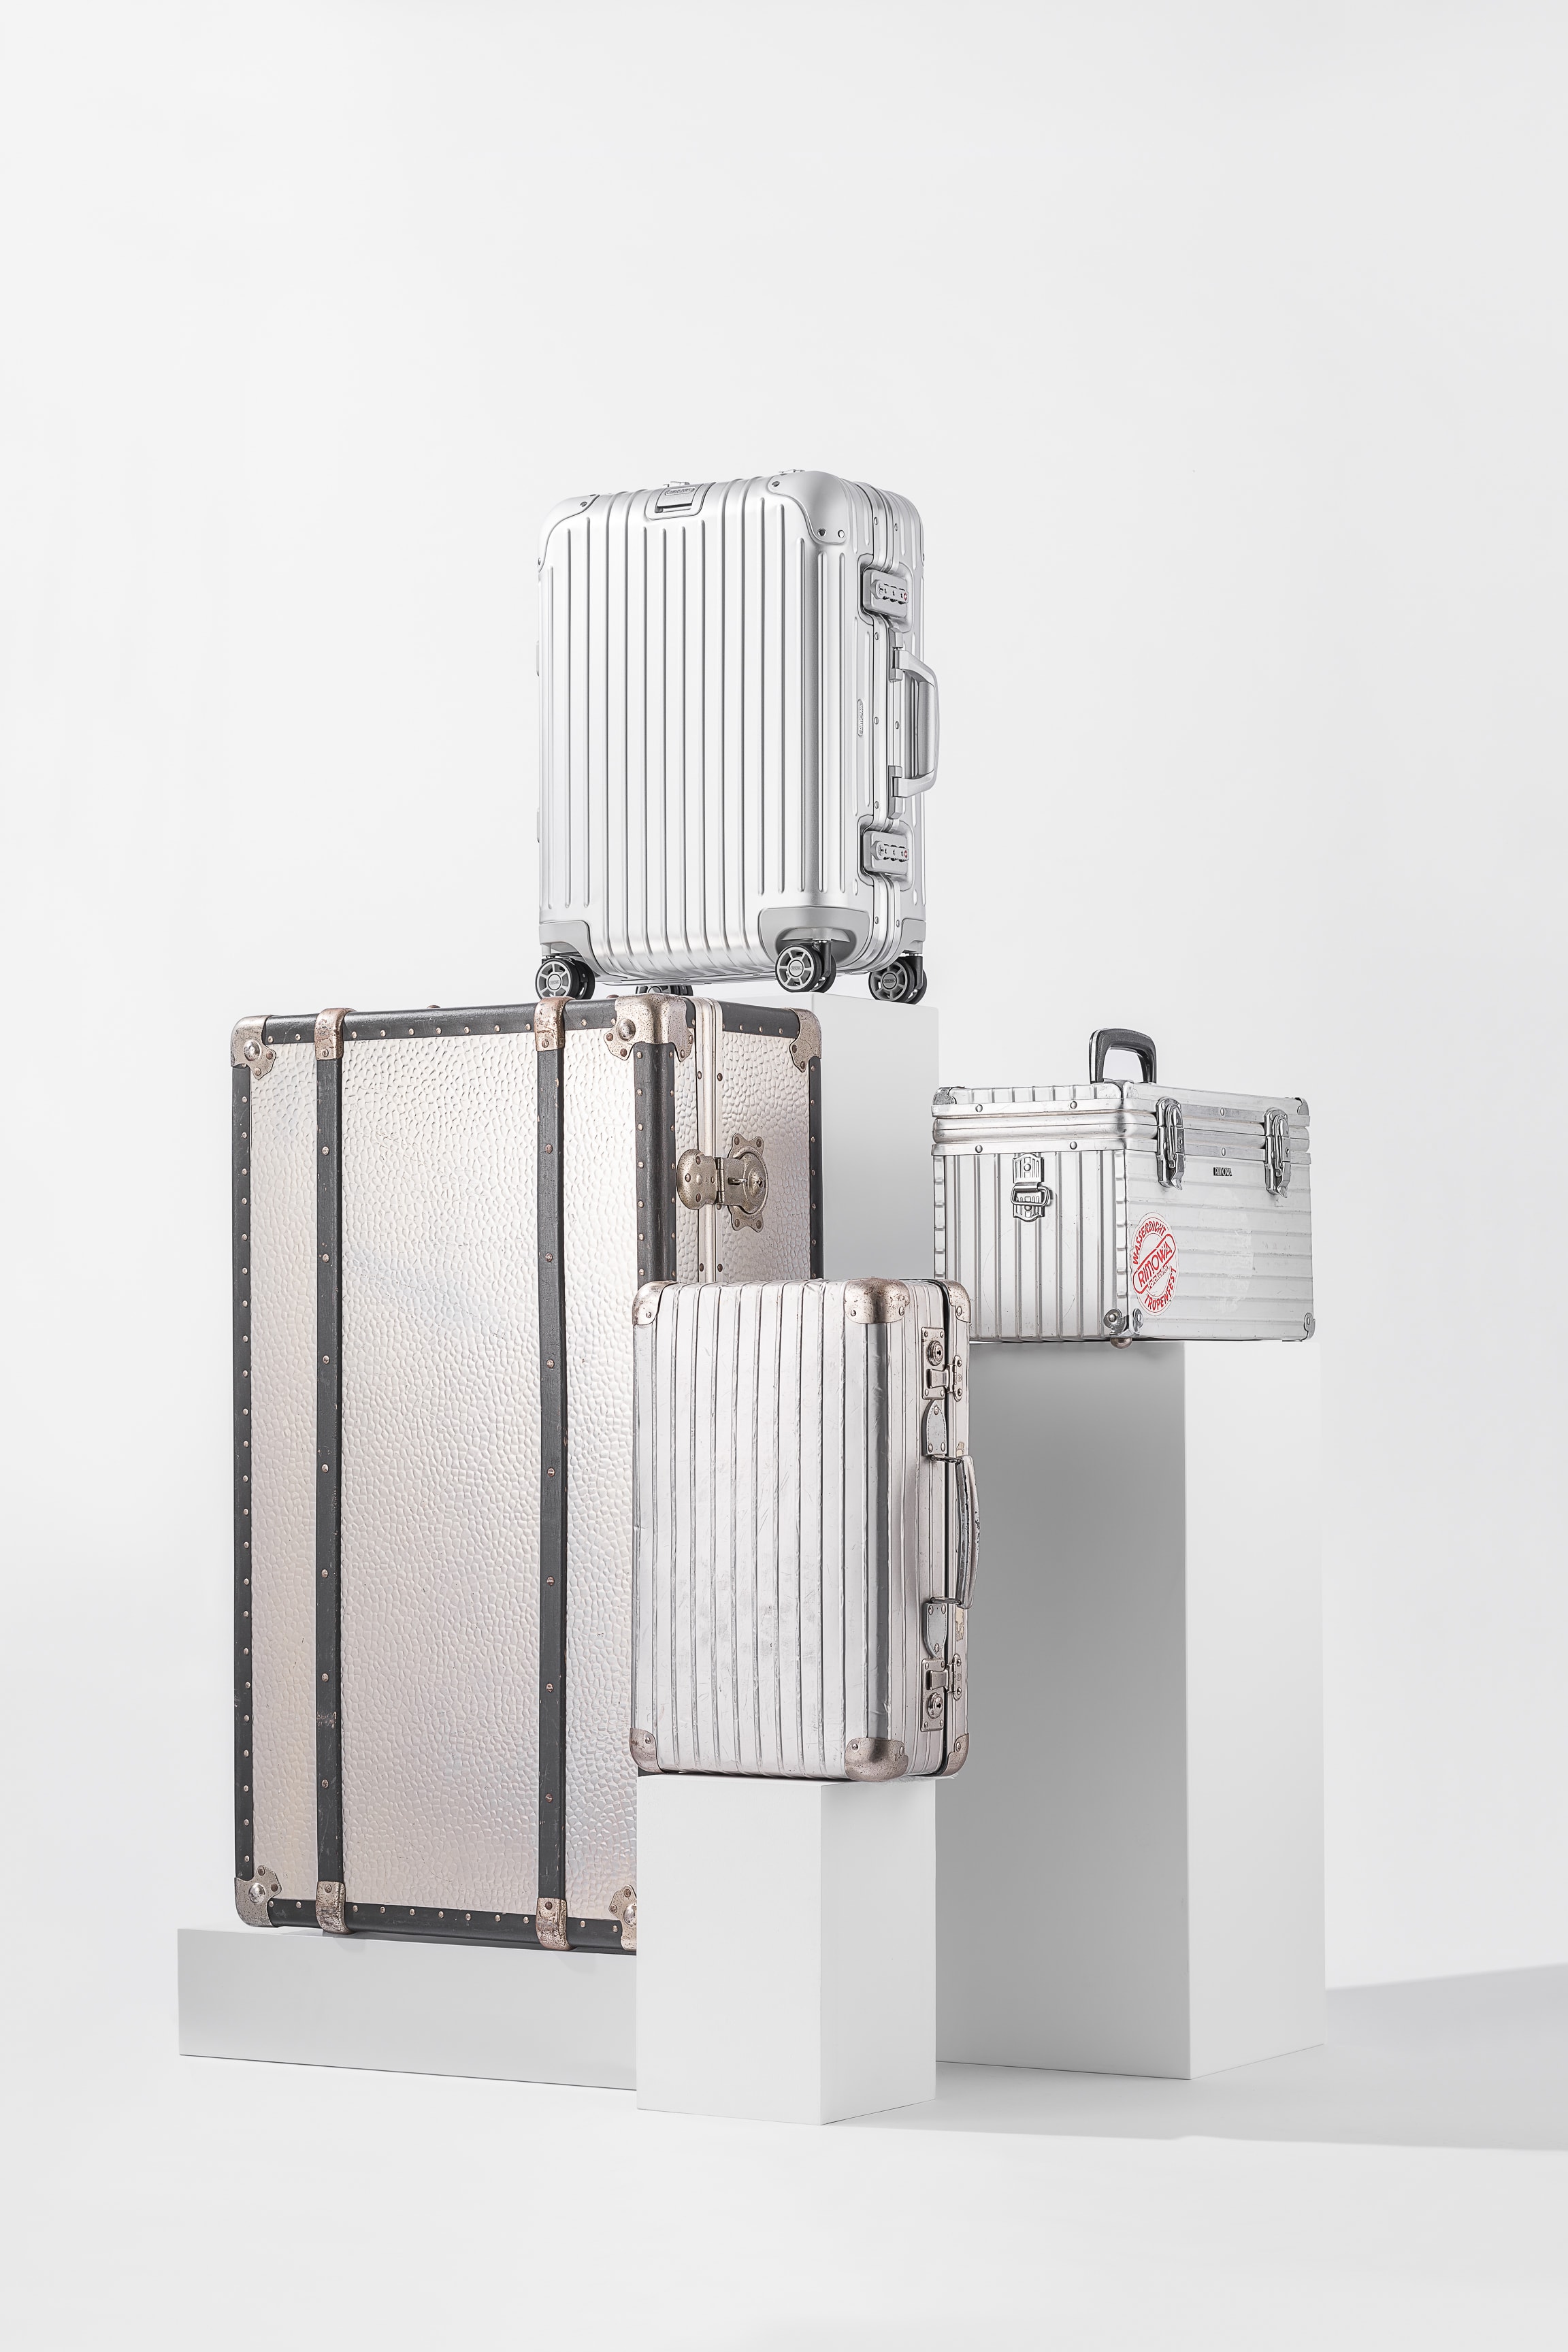 RIMOWA 鋁鎂合金行李箱誕生 80 週年：一覽經典行李箱的生產過程